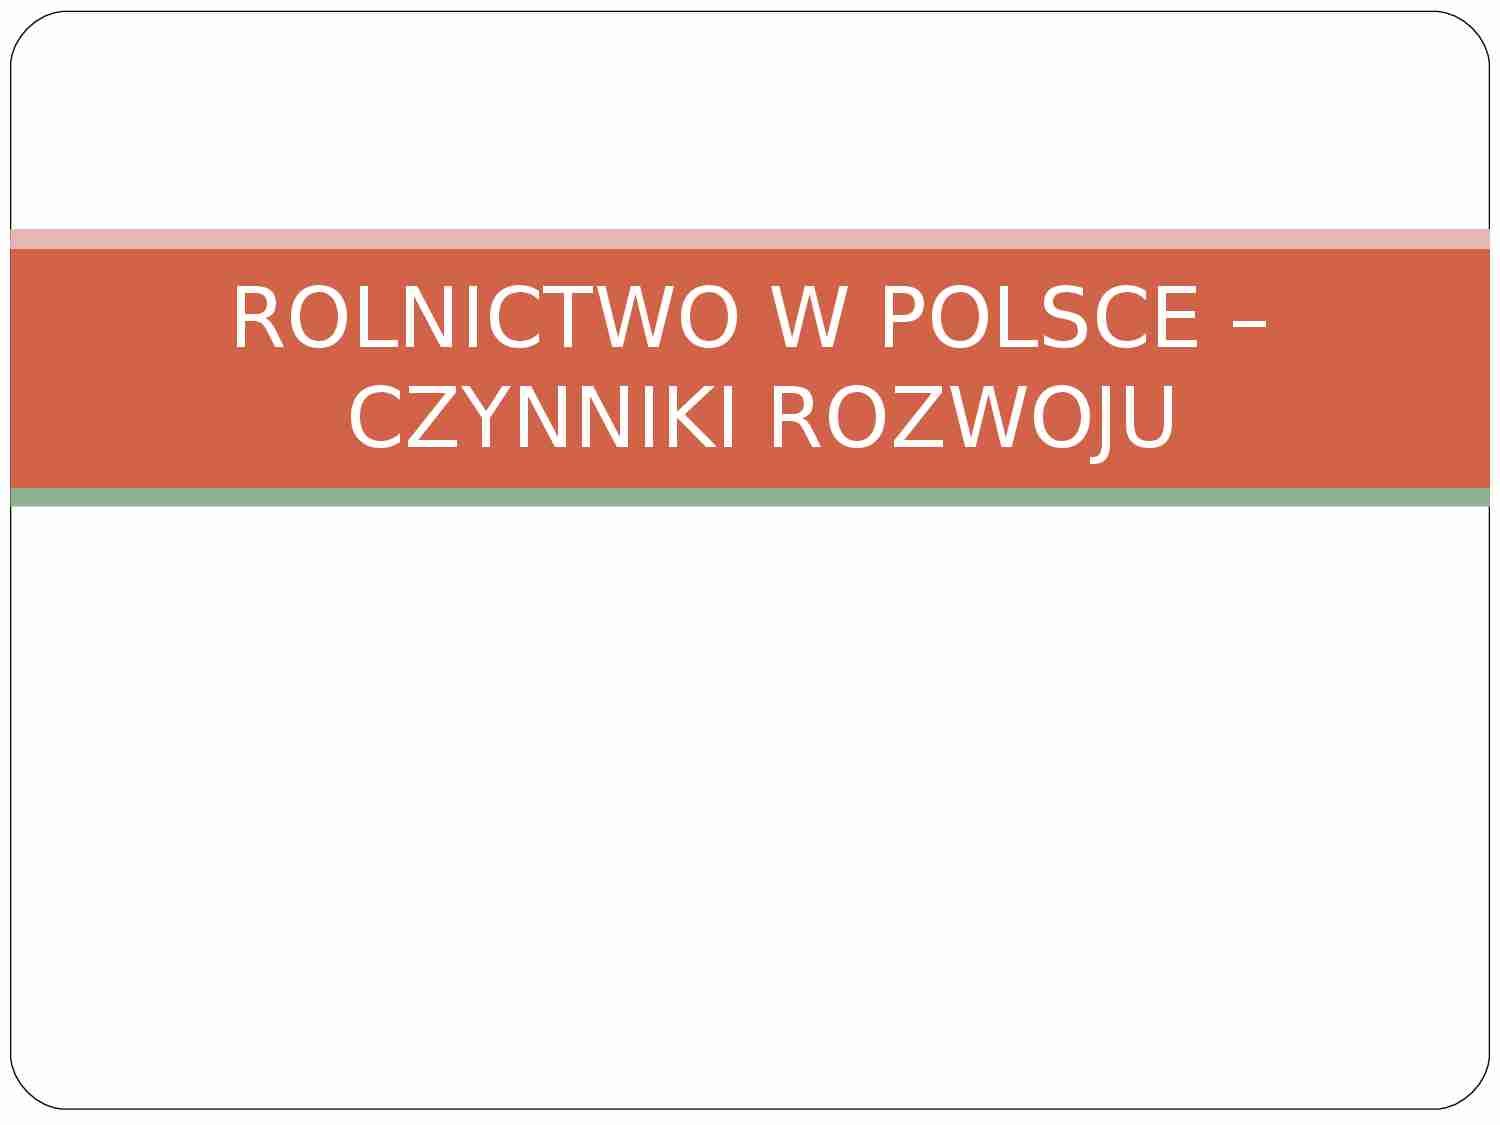 Rolnictwo w Polsce - czynniki rozwoju - strona 1